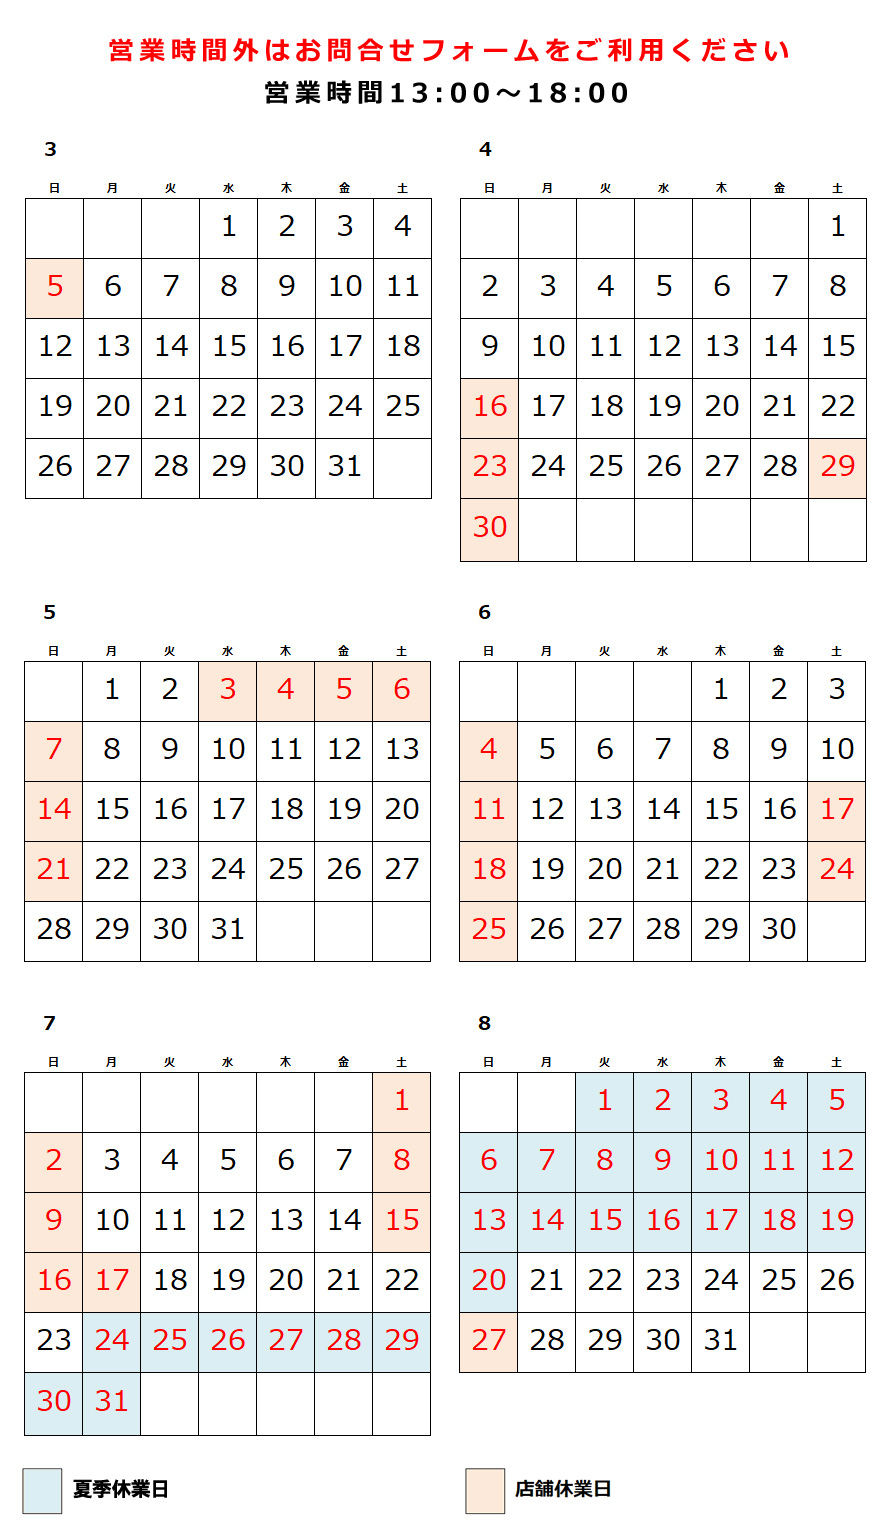 制服のフジワラ 営業日カレンダー、4月、5月、6月、7月、8月月